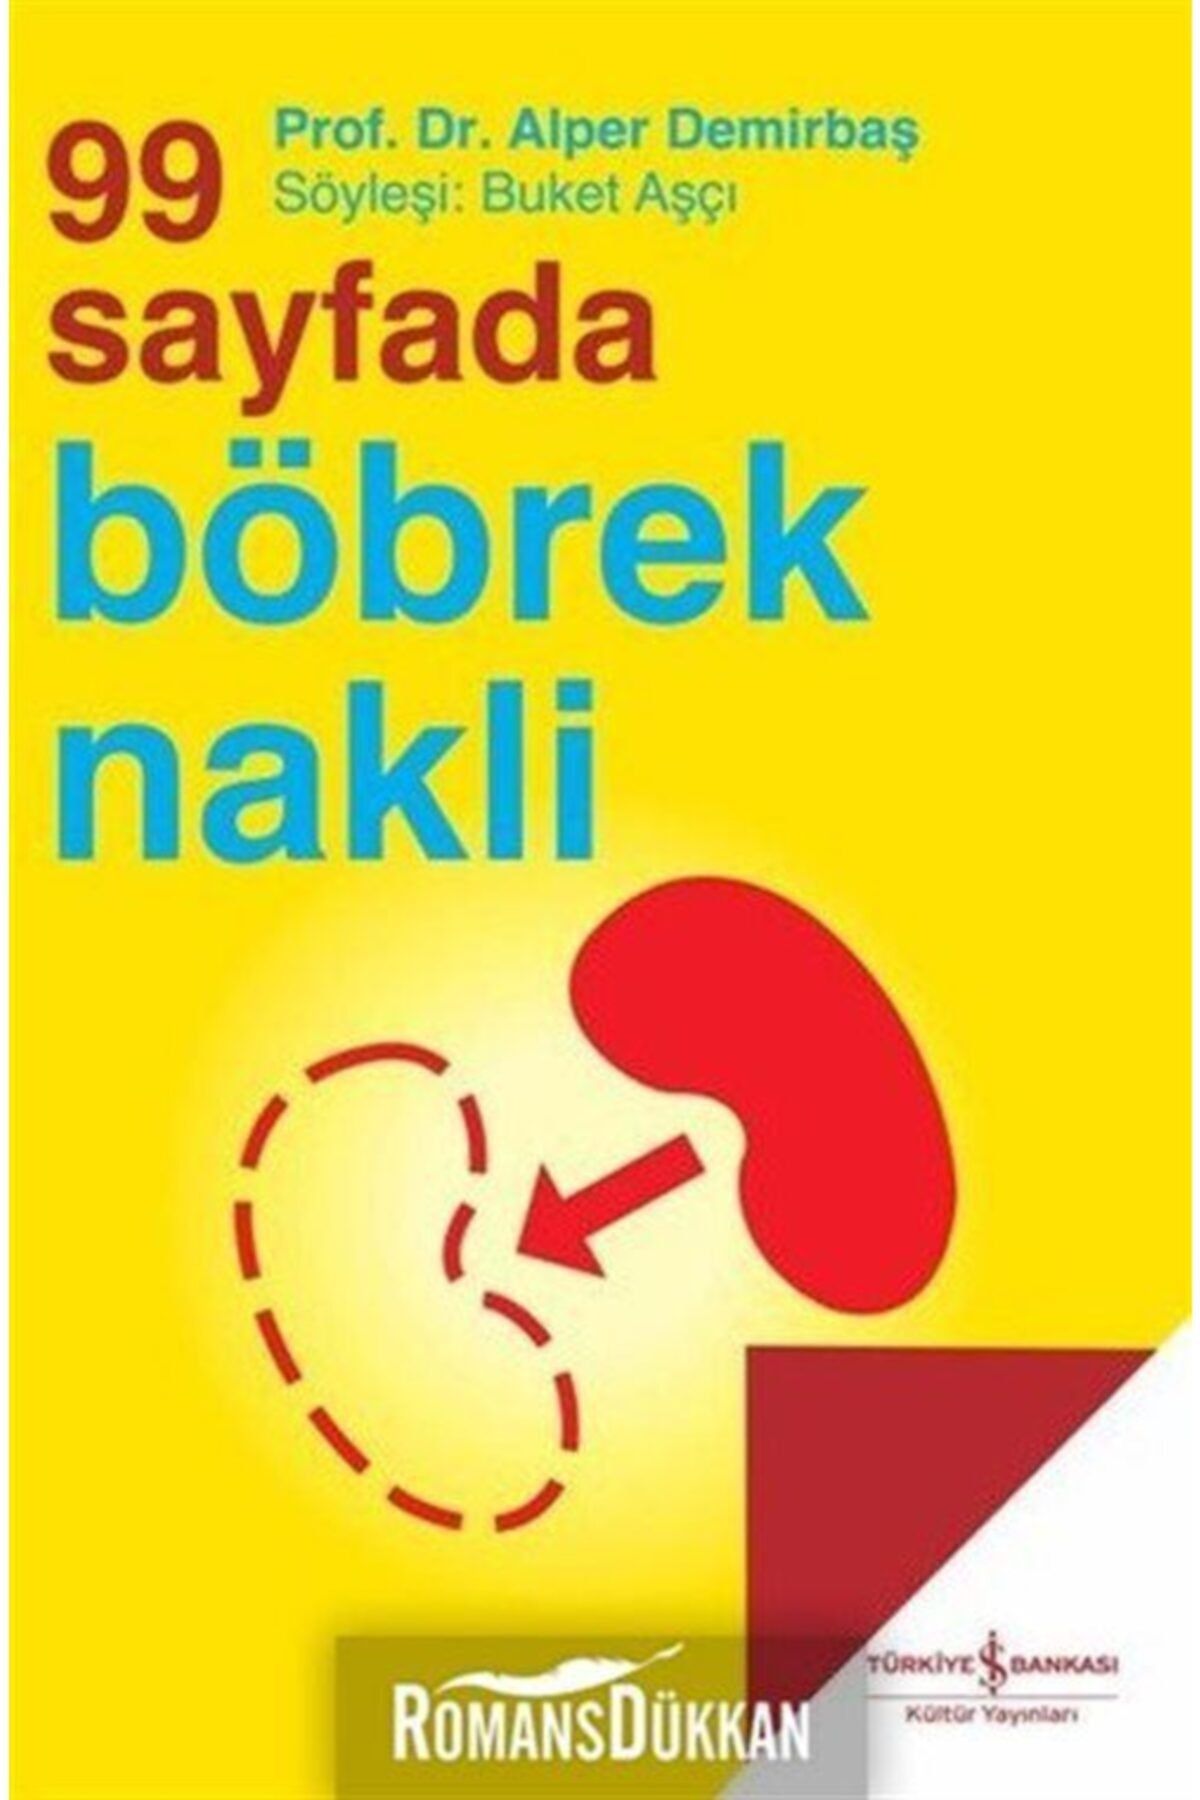 Türkiye İş Bankası Kültür Yayınları 99 Sayfada Böbrek Nakli - Alper Demirbaş